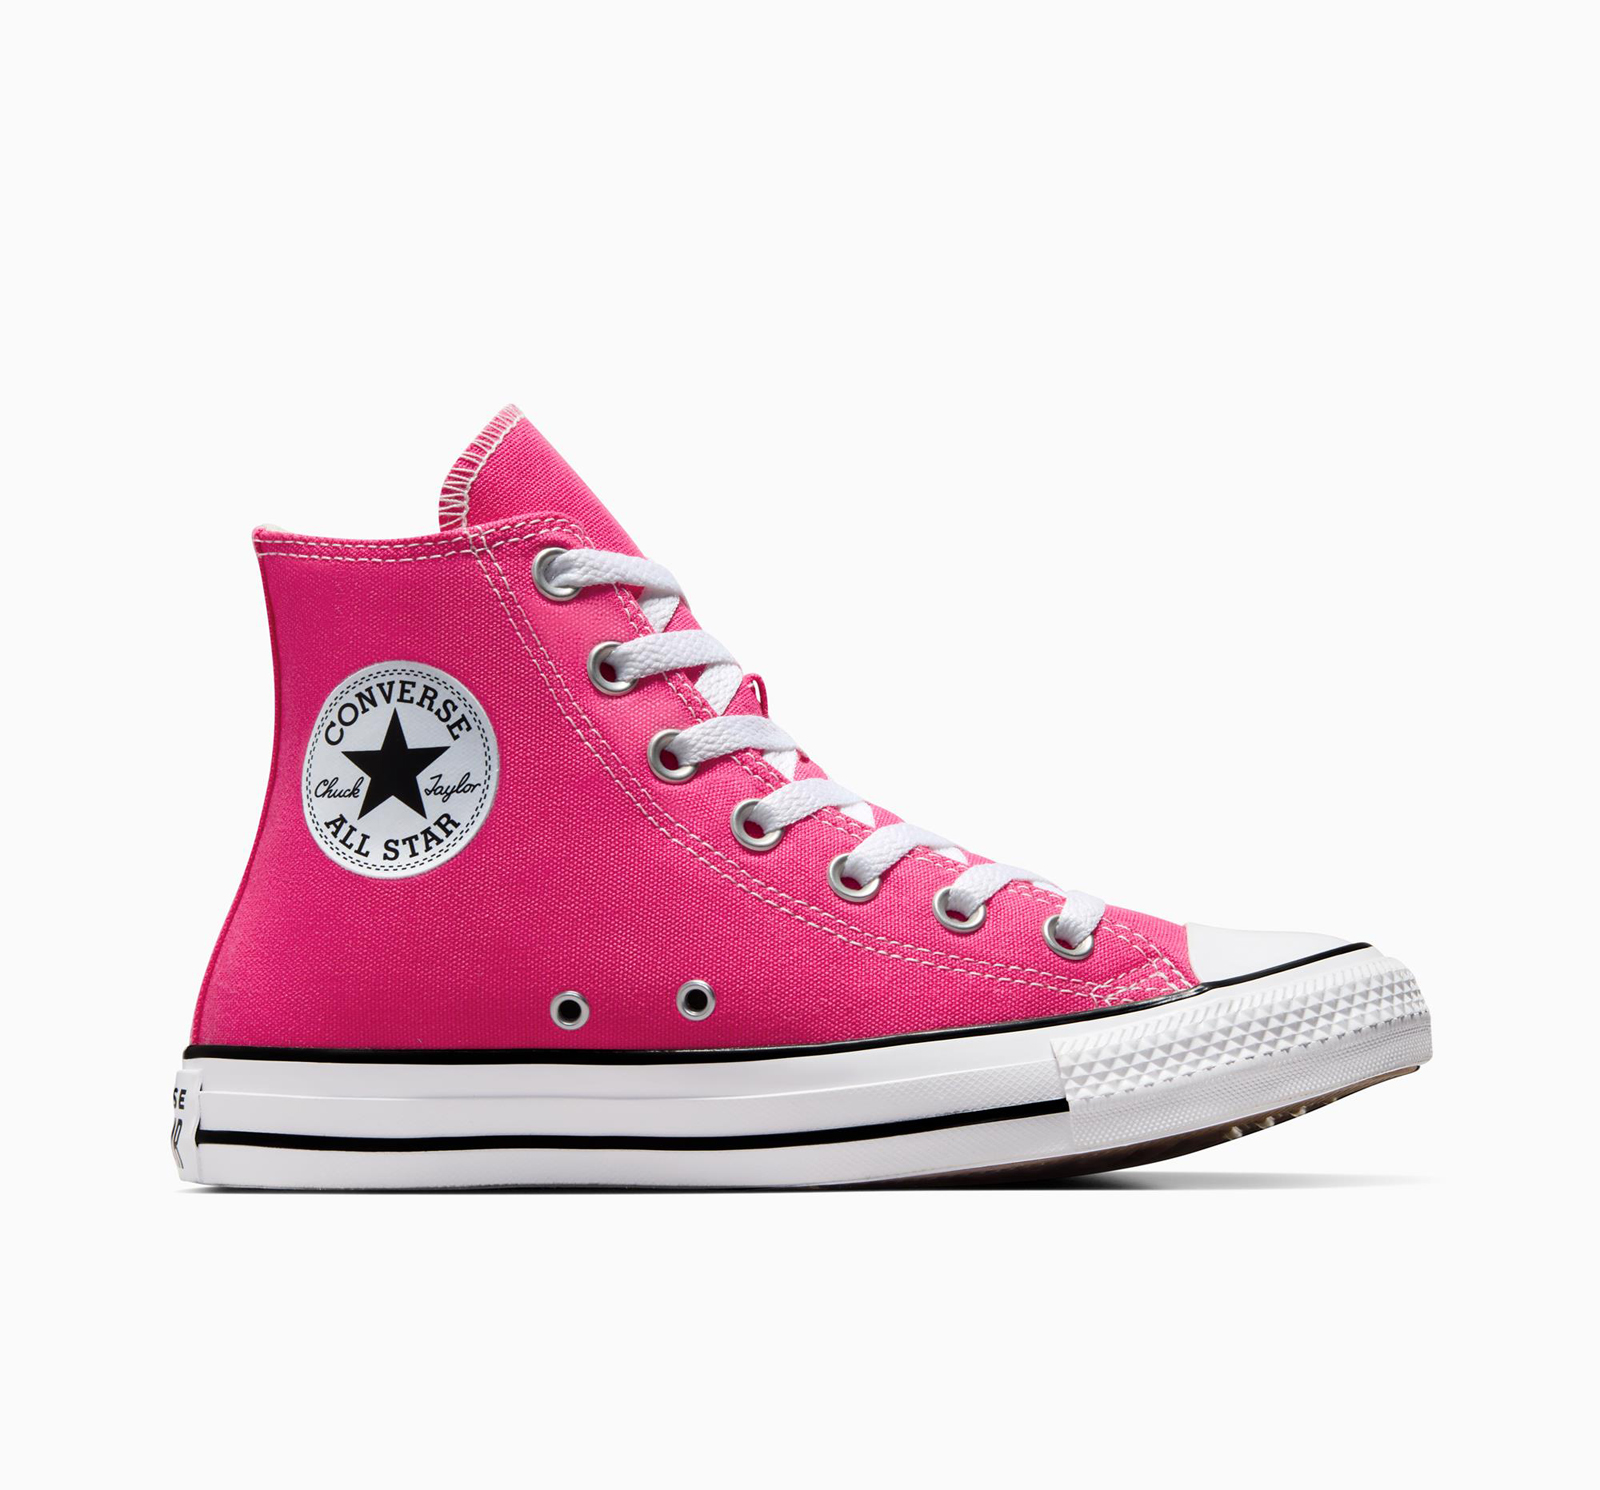 Ανδρικά > Παπούτσια > Sneaker > Παπούτσι Mid Cut Converse - CHUCK TAYLOR ALL STAR - 672-CHAOS FUCHSIA